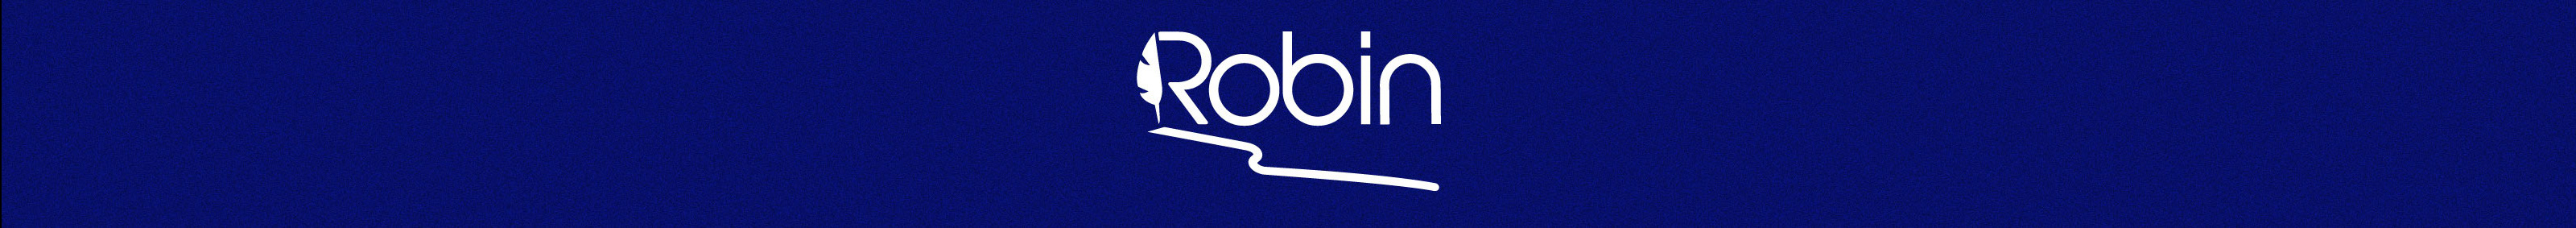 Robin Lindo profil başlığı